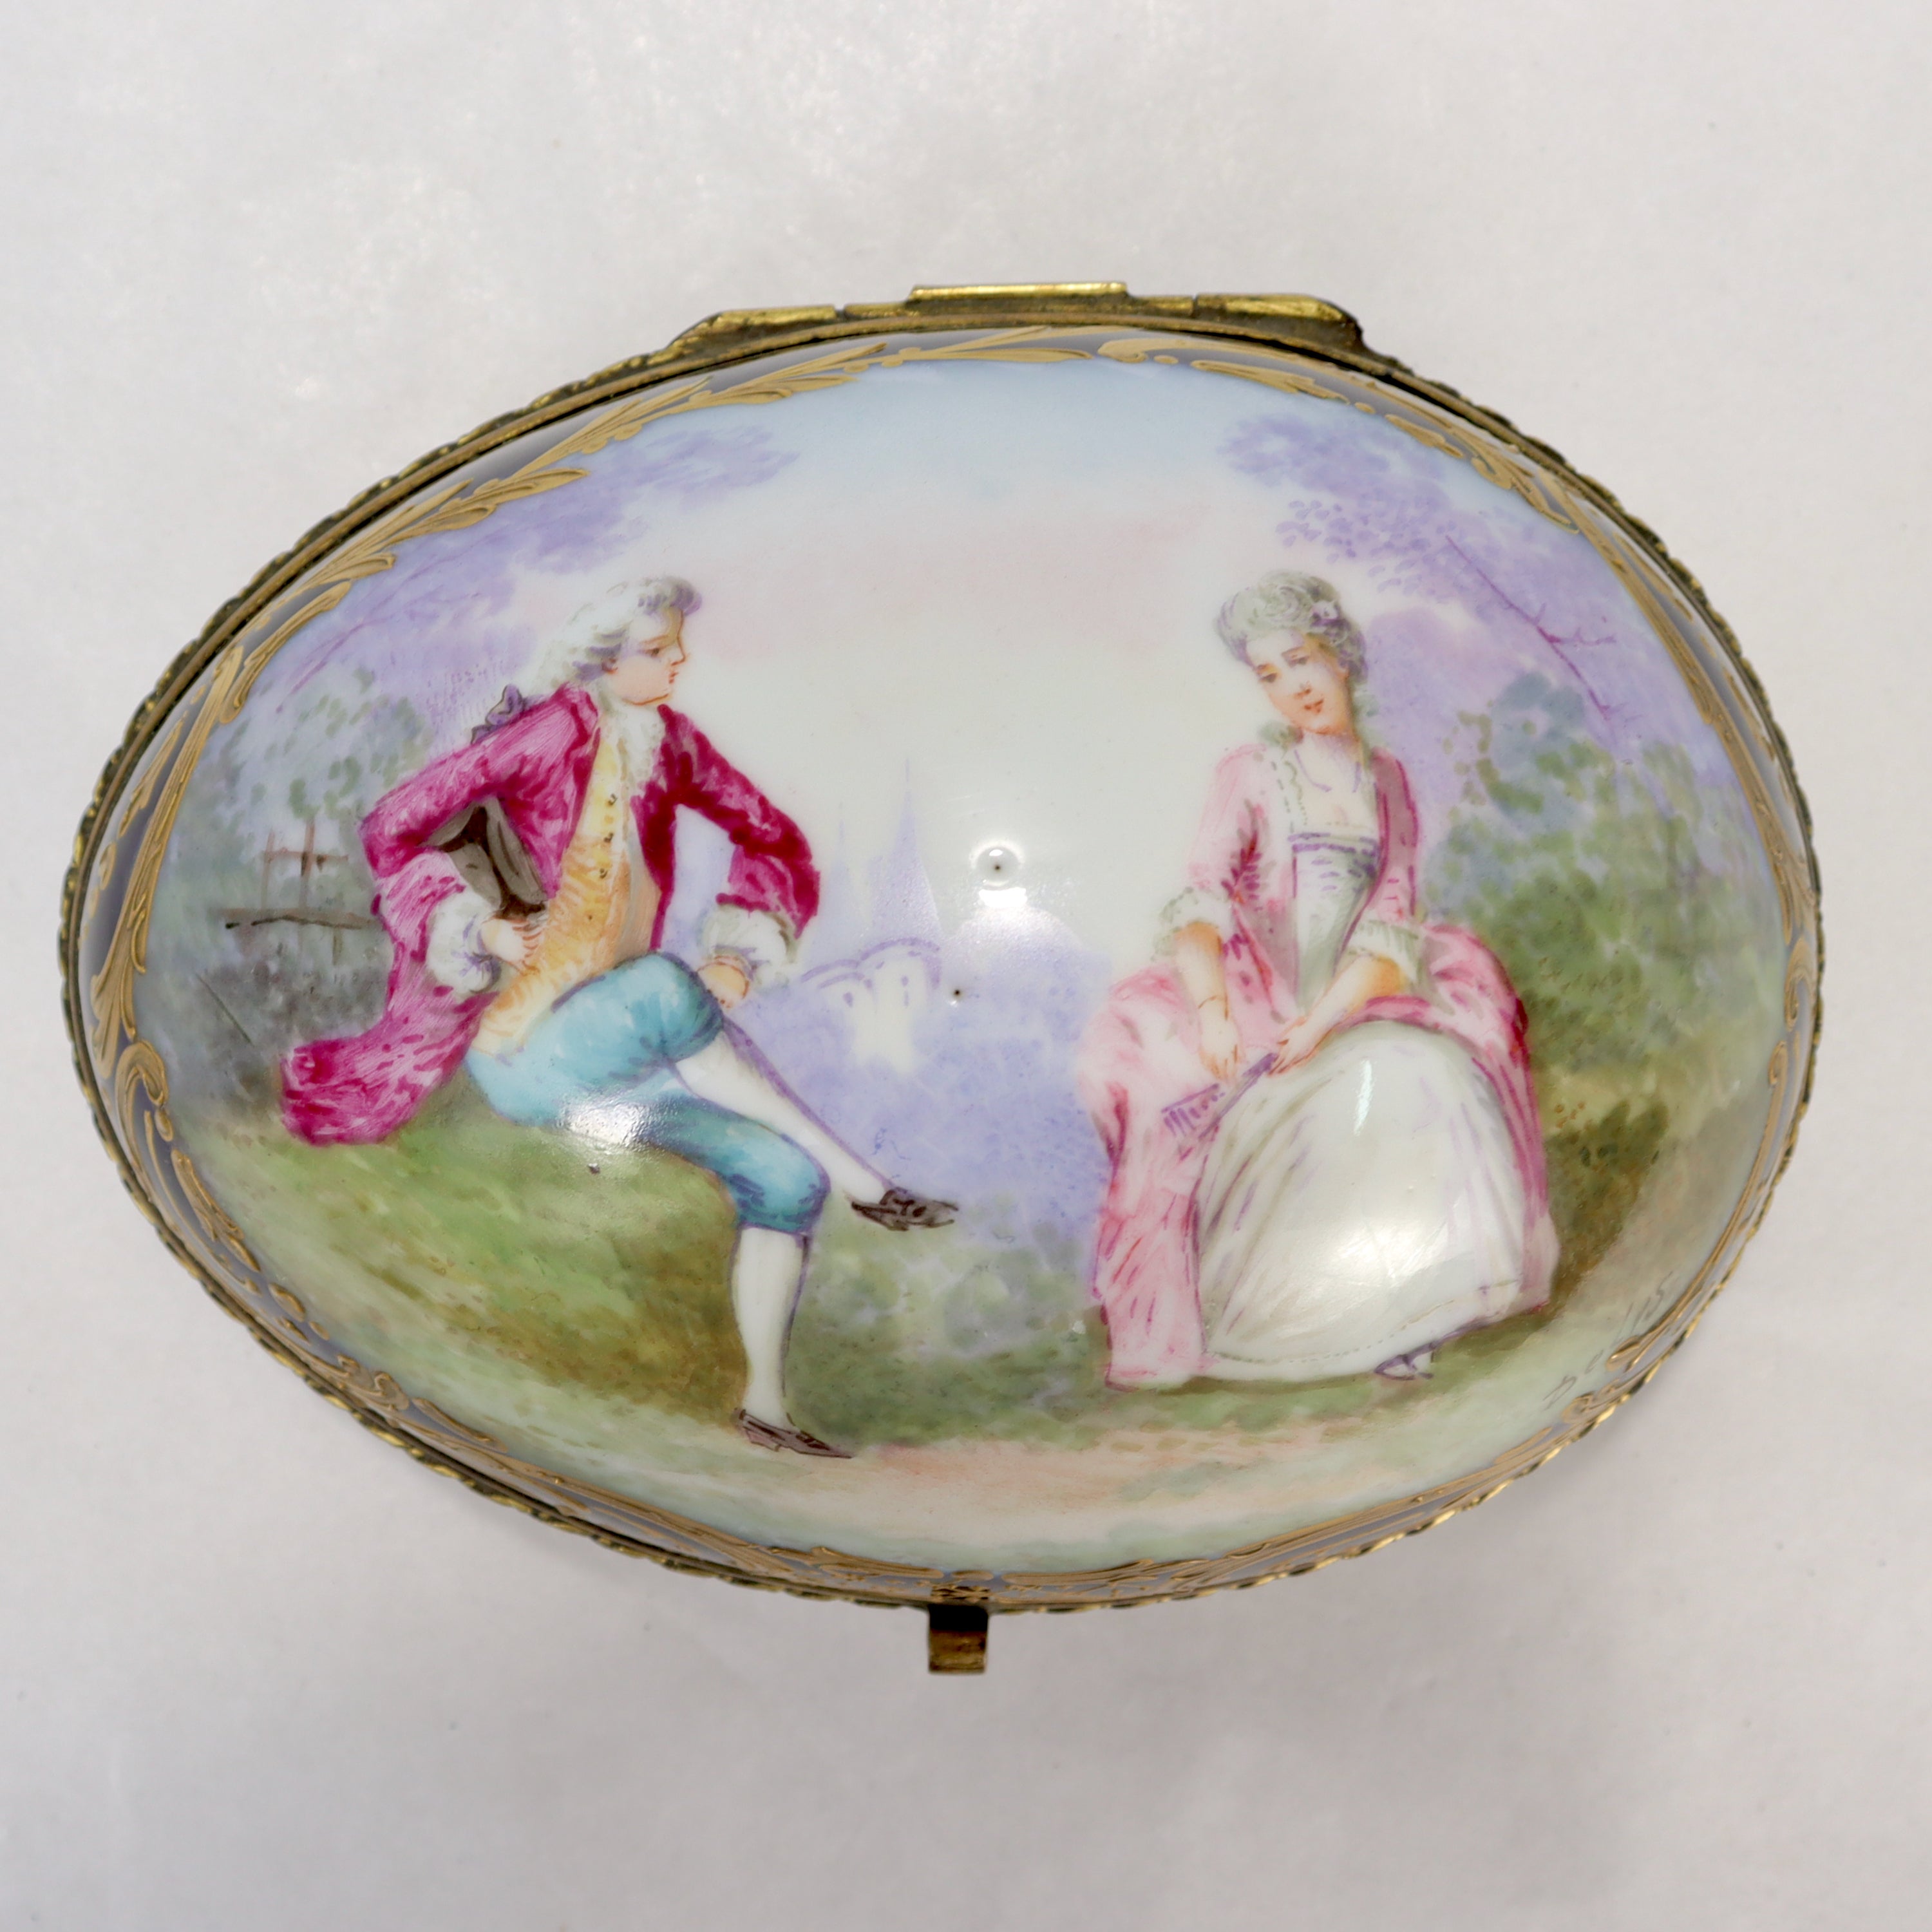 Une belle boîte à vaisselle en porcelaine française ancienne, signée. 

Dans une forme ovale ou ovoïde rare. 

Décoré d'un fond cobalt, d'une scène signée et peinte à la main représentant des amoureux dans un jardin, et d'une riche dorure sur